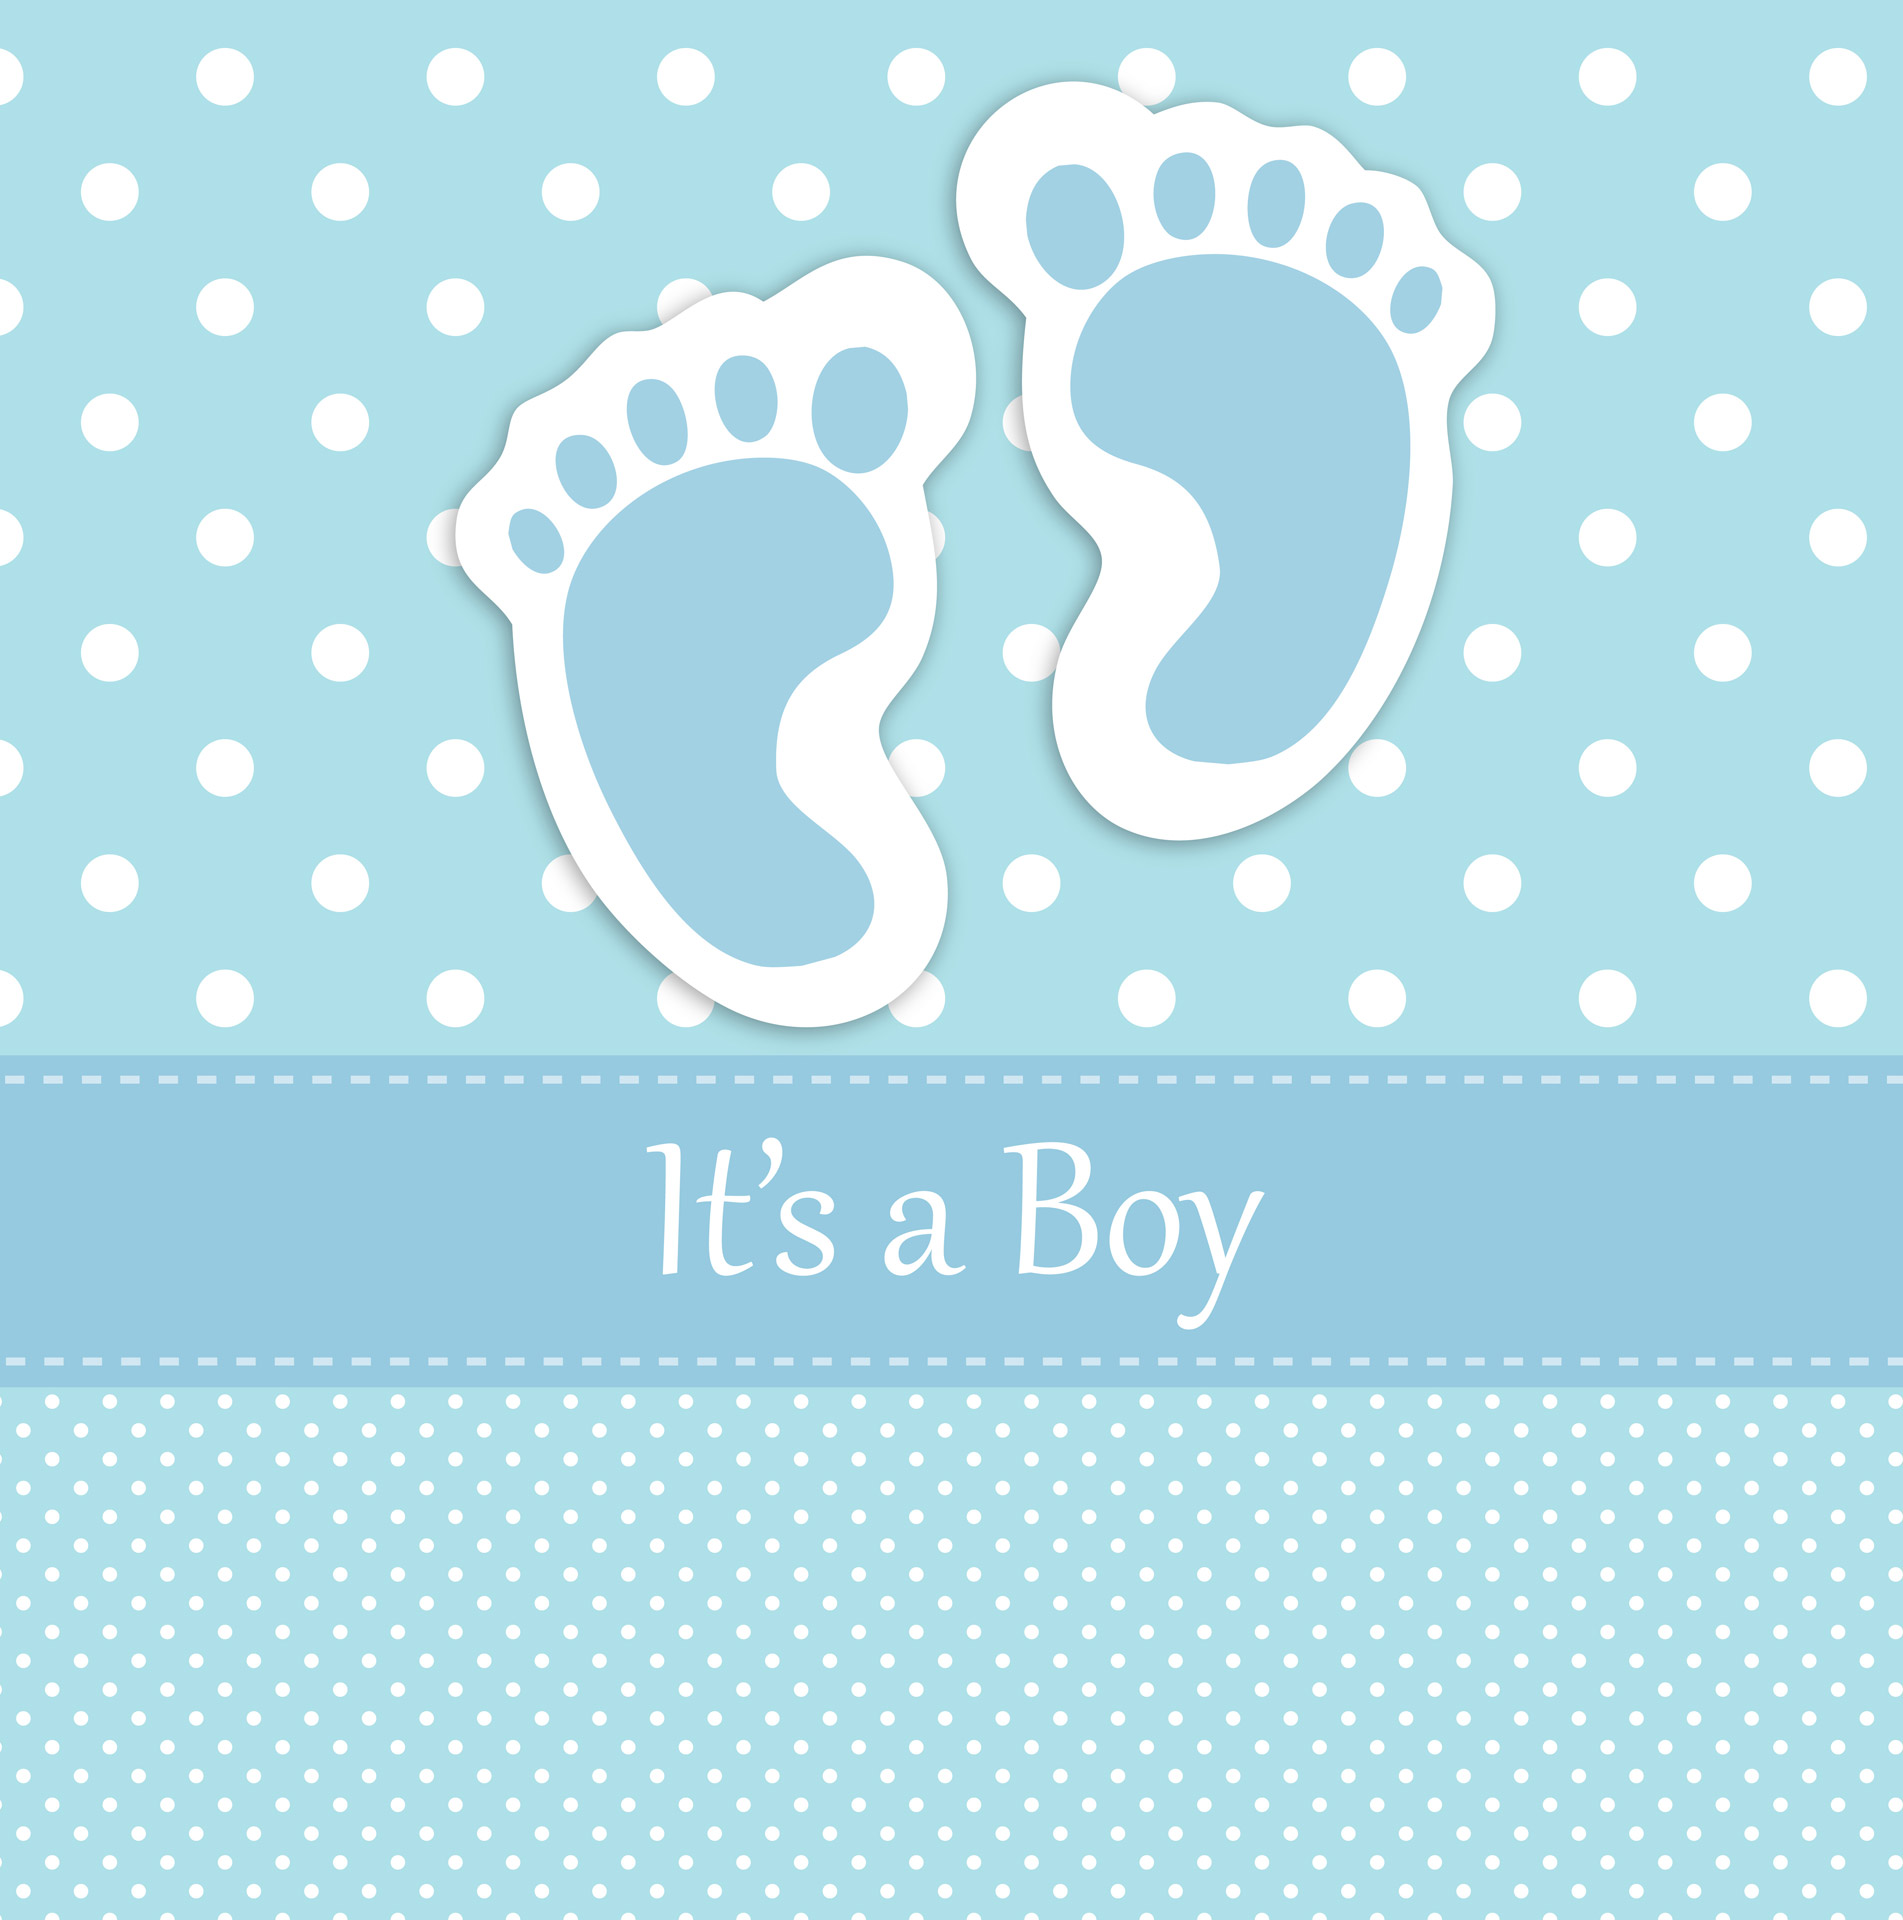 Baby Boy Footprints Card